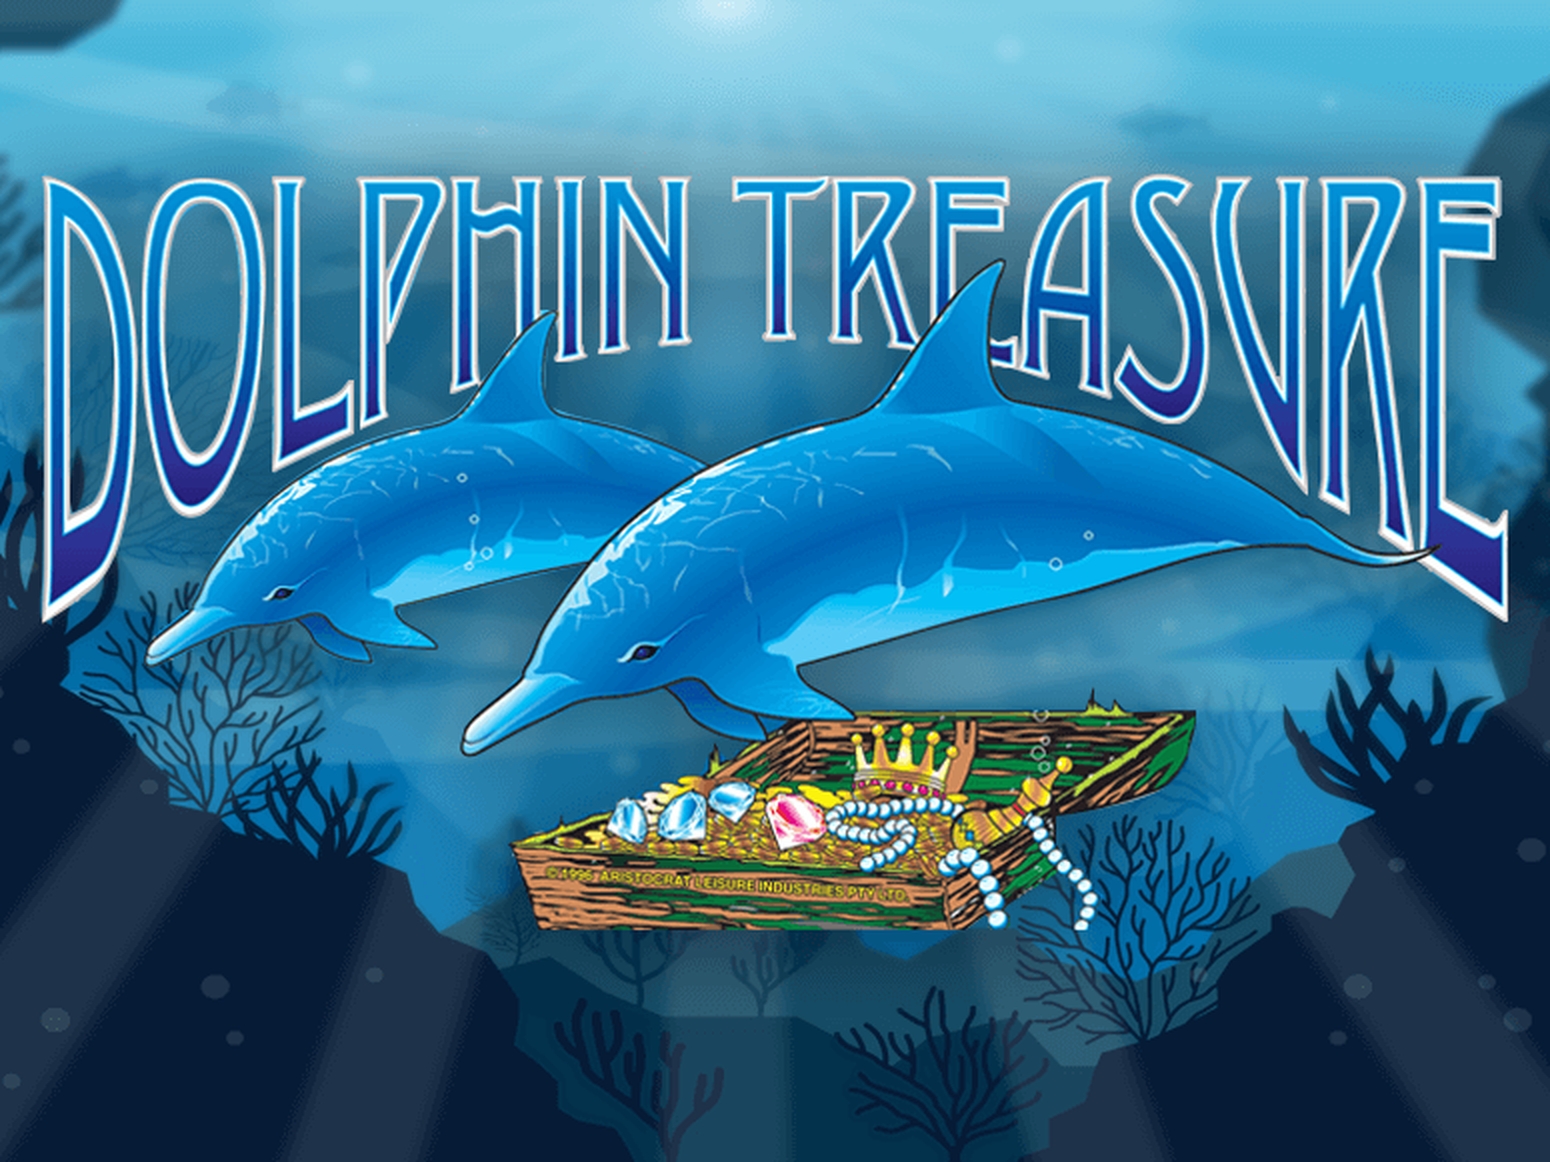 Dolphin Treasure demo